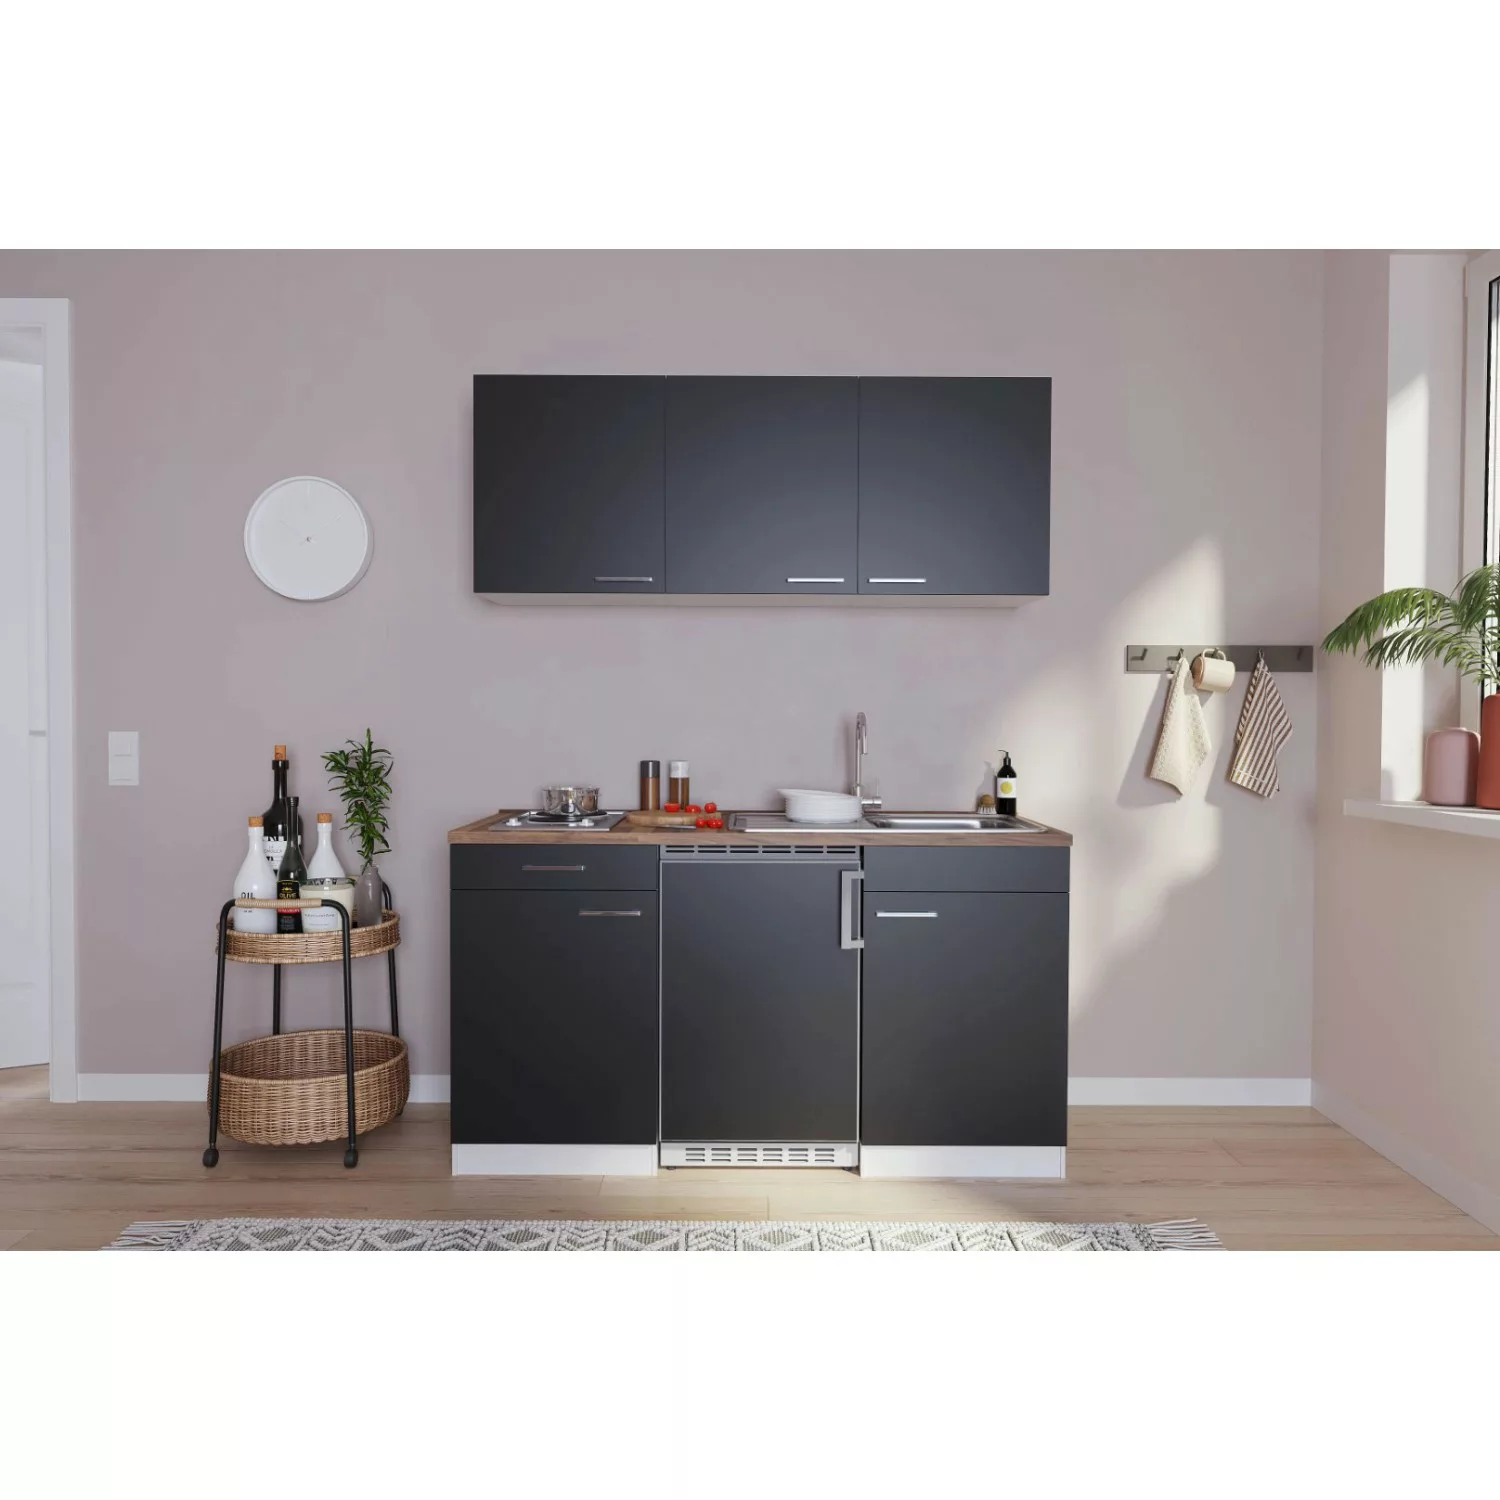 Respekta Küchenzeile KB150WG 150 cm Grau-Weiß Glänzend günstig online kaufen